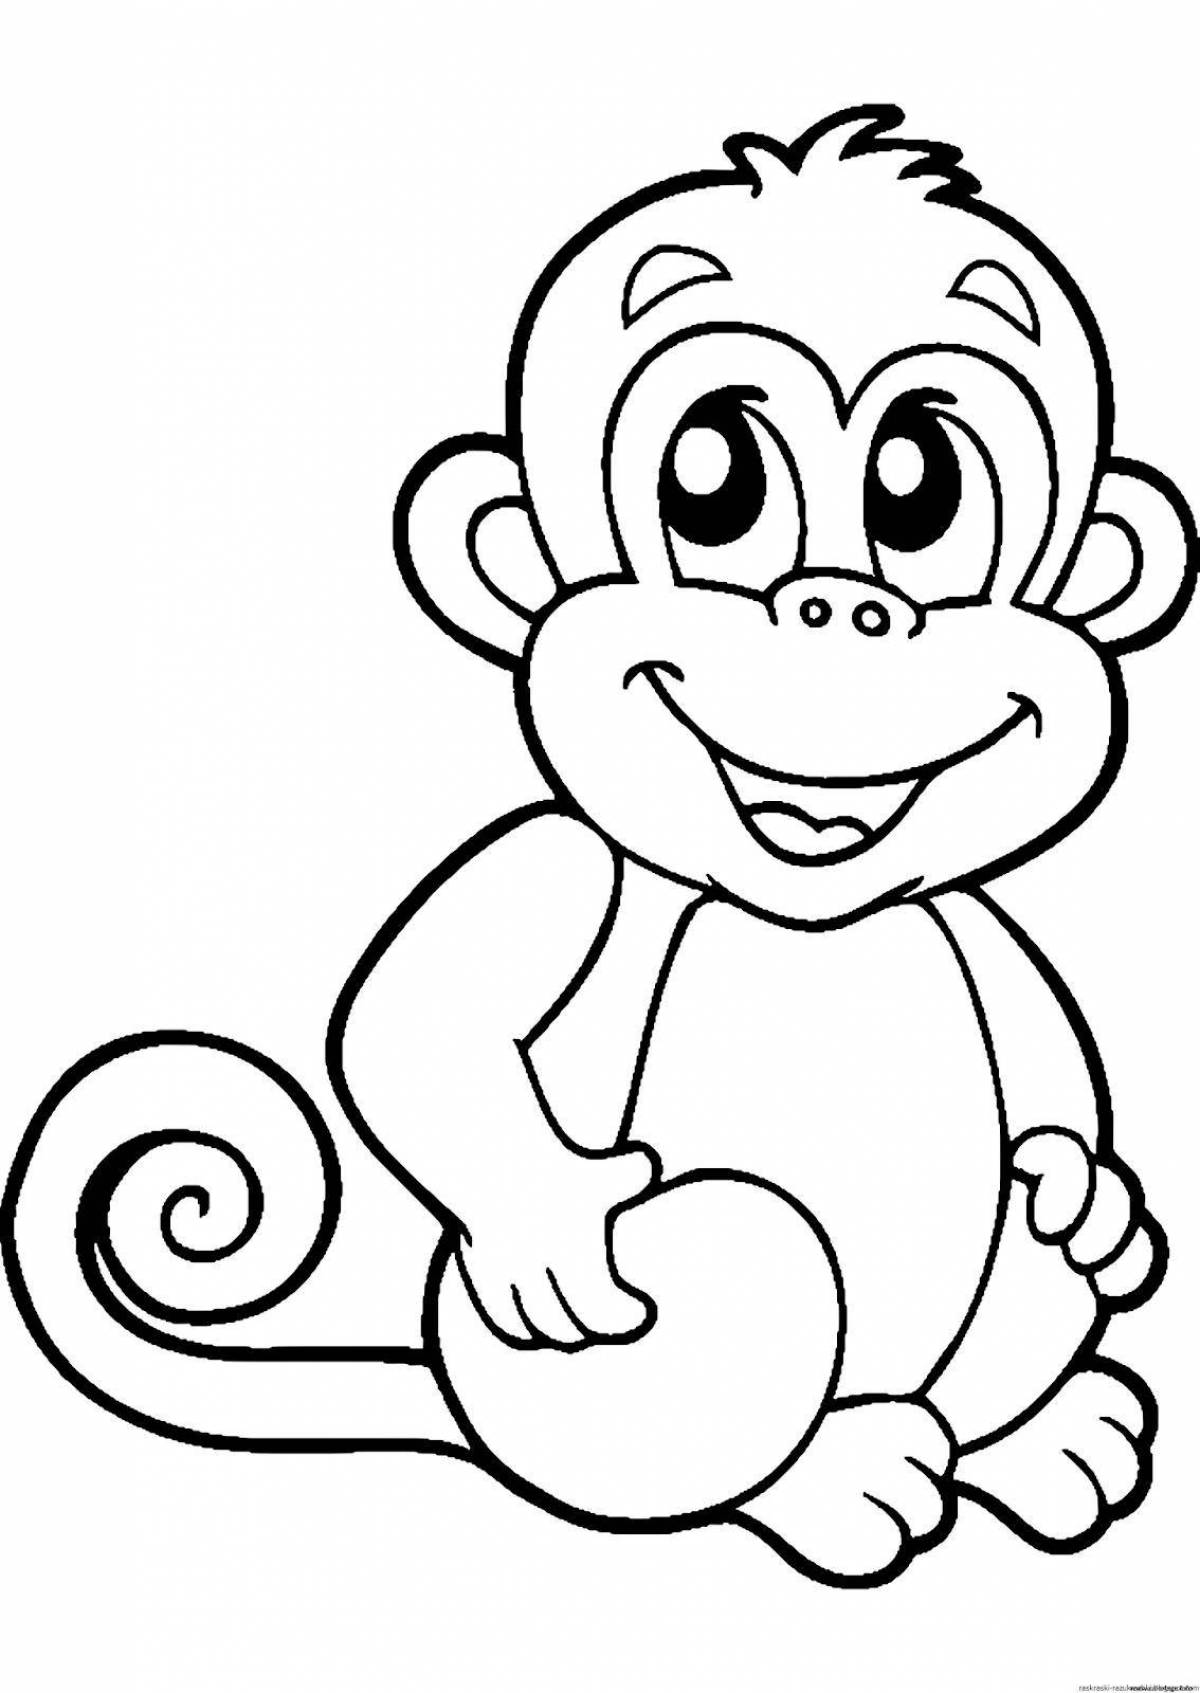 Заманчивая раскраска обезьяна для детей